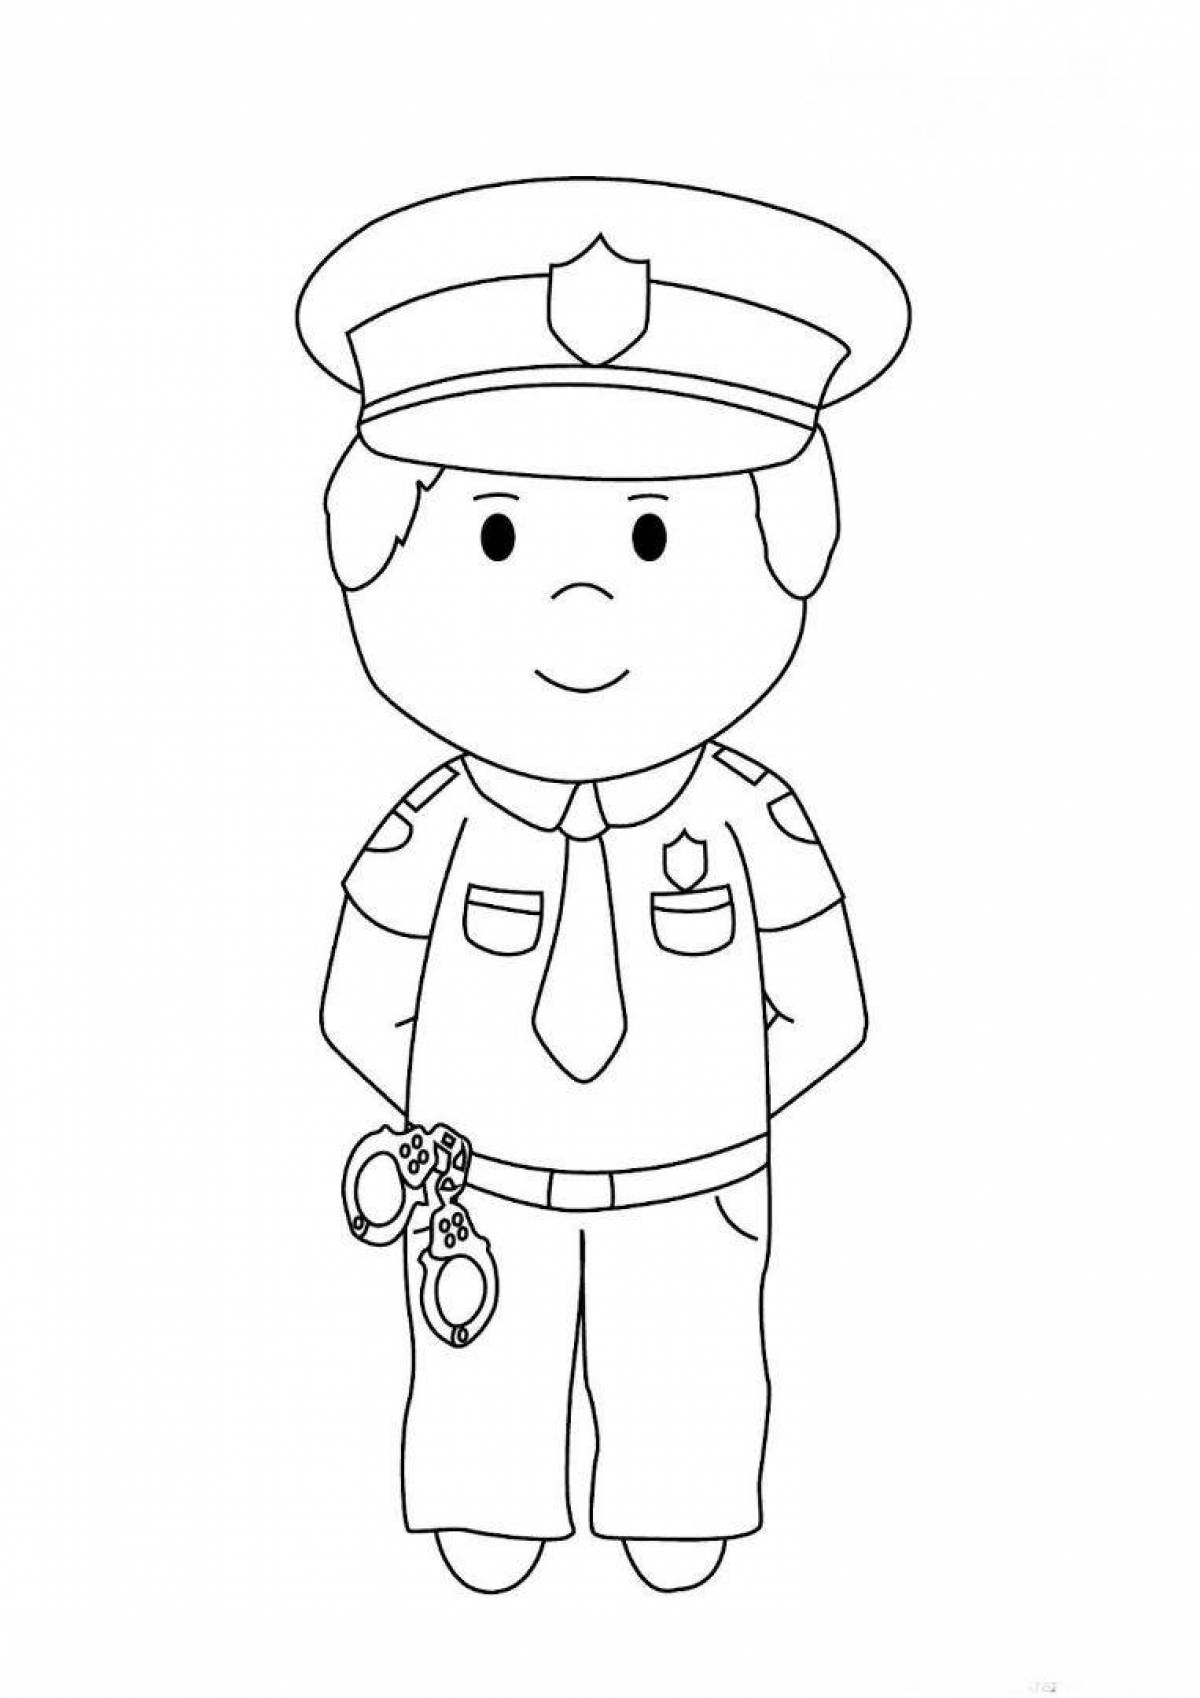 Развлекательная раскраска полицейского для детей